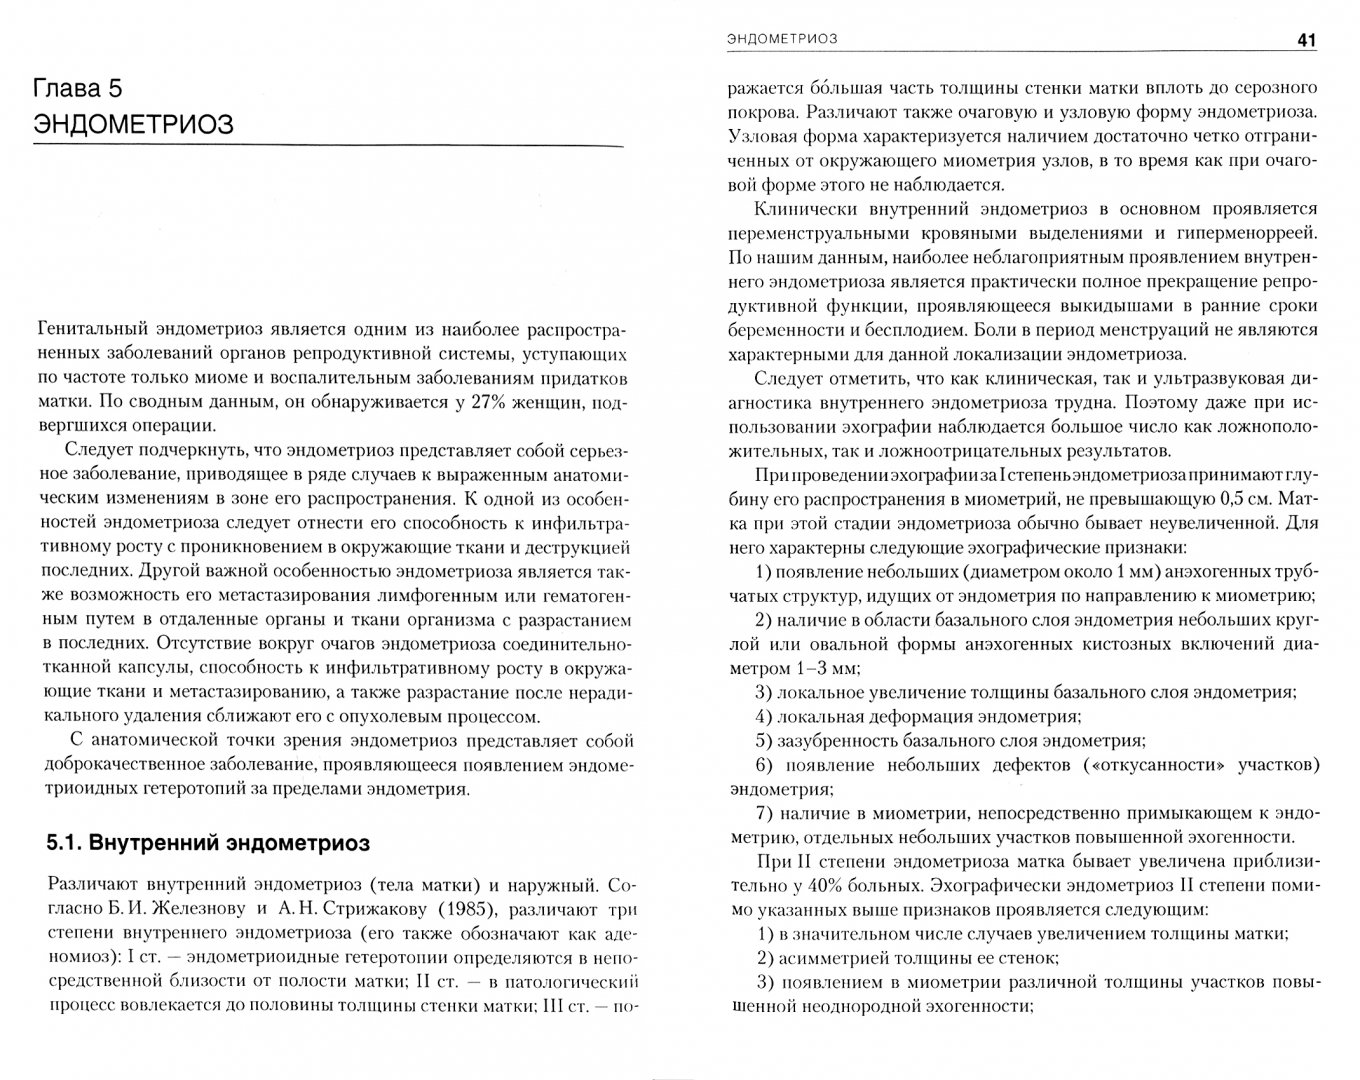 Иллюстрация 1 из 4 для Применение эхографии в гинекологии - Владимир Демидов | Лабиринт - книги. Источник: Лабиринт